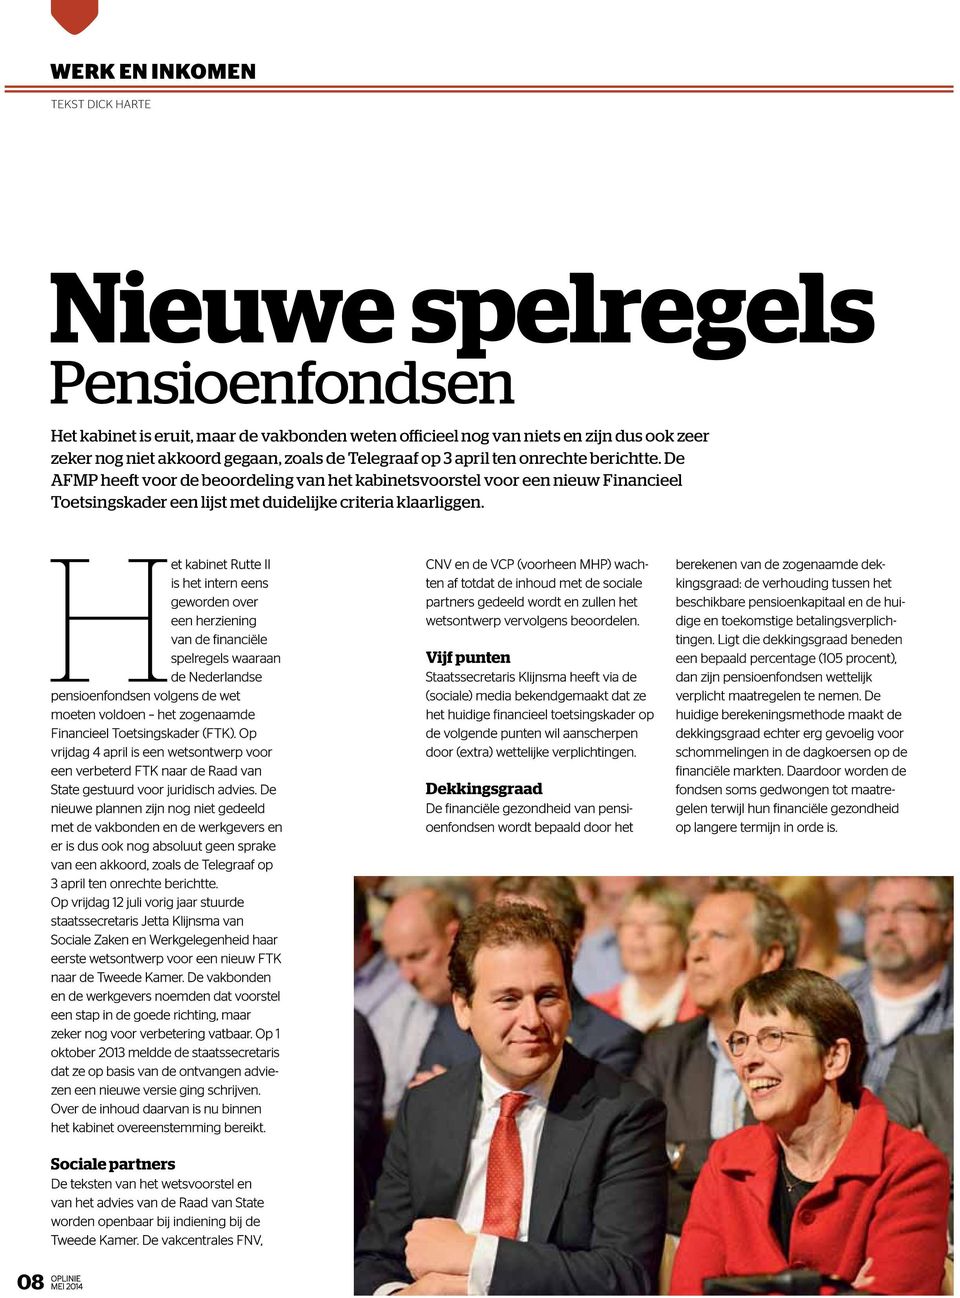 Het kabinet Rutte II is het intern eens geworden over een herziening van de financiële spelregels waaraan de Nederlandse pensioenfondsen volgens de wet moeten voldoen het zogenaamde Financieel